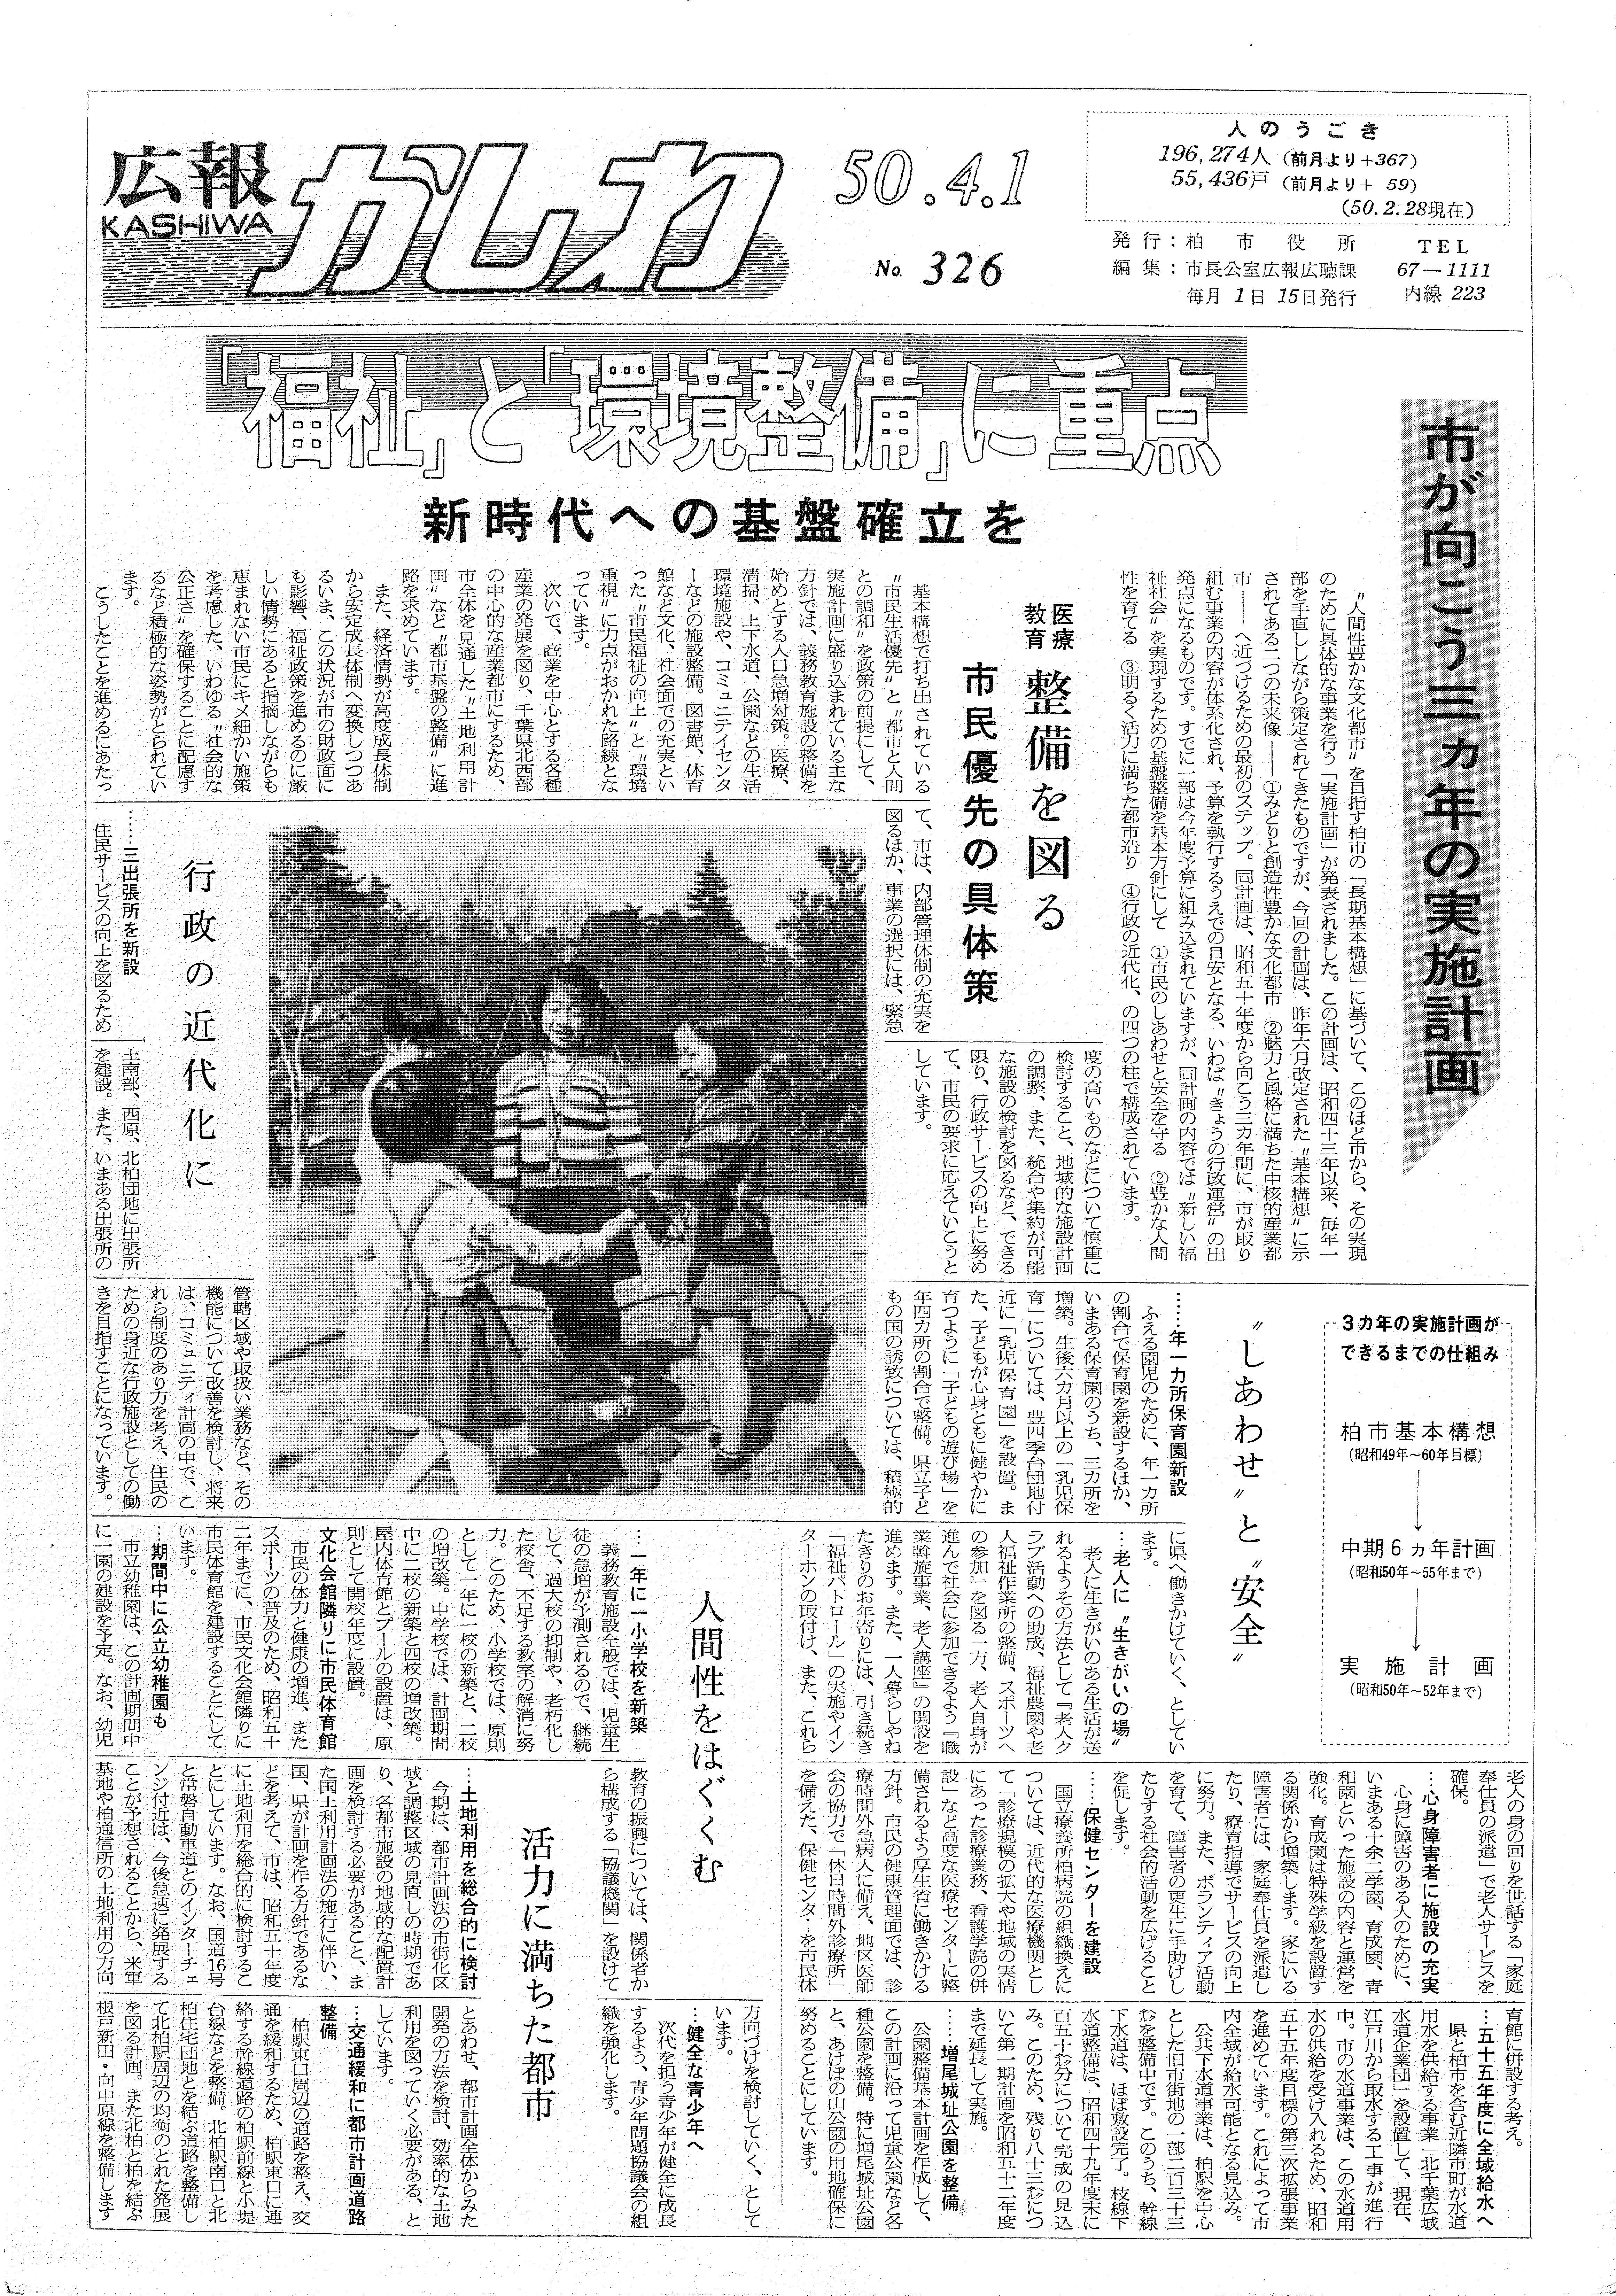 広報かしわ　昭和50年4月1日発行　326号